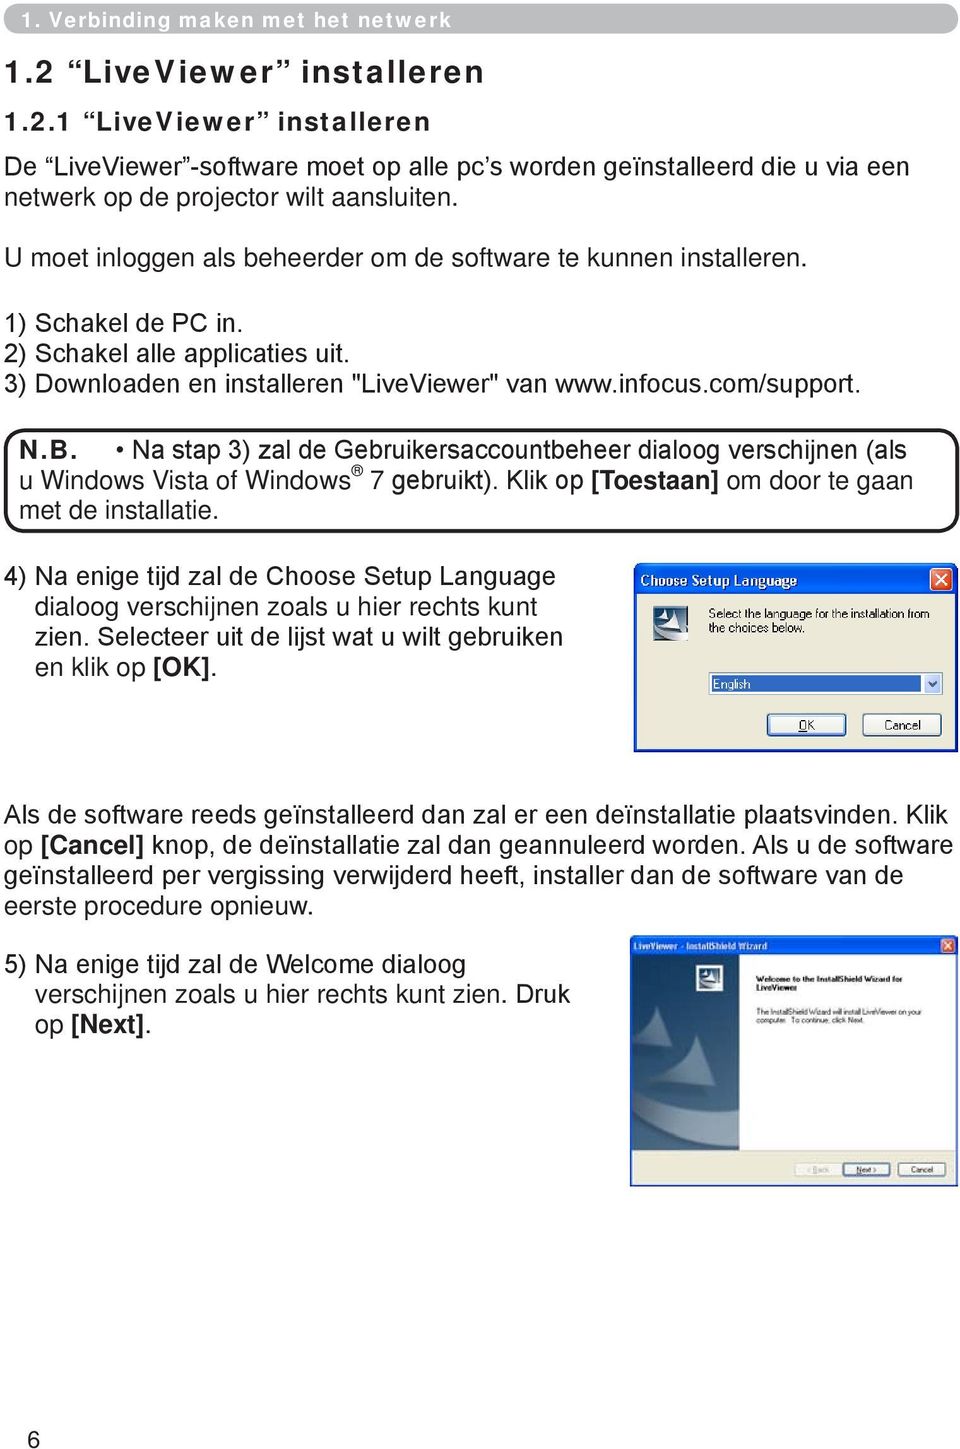 Na stap 3) zal de Gebruikersaccountbeheer dialoog verschijnen (als u Windows Vista of Windows 7 gebruikt). Klik op [Toestaan] om door te gaan met de installatie.